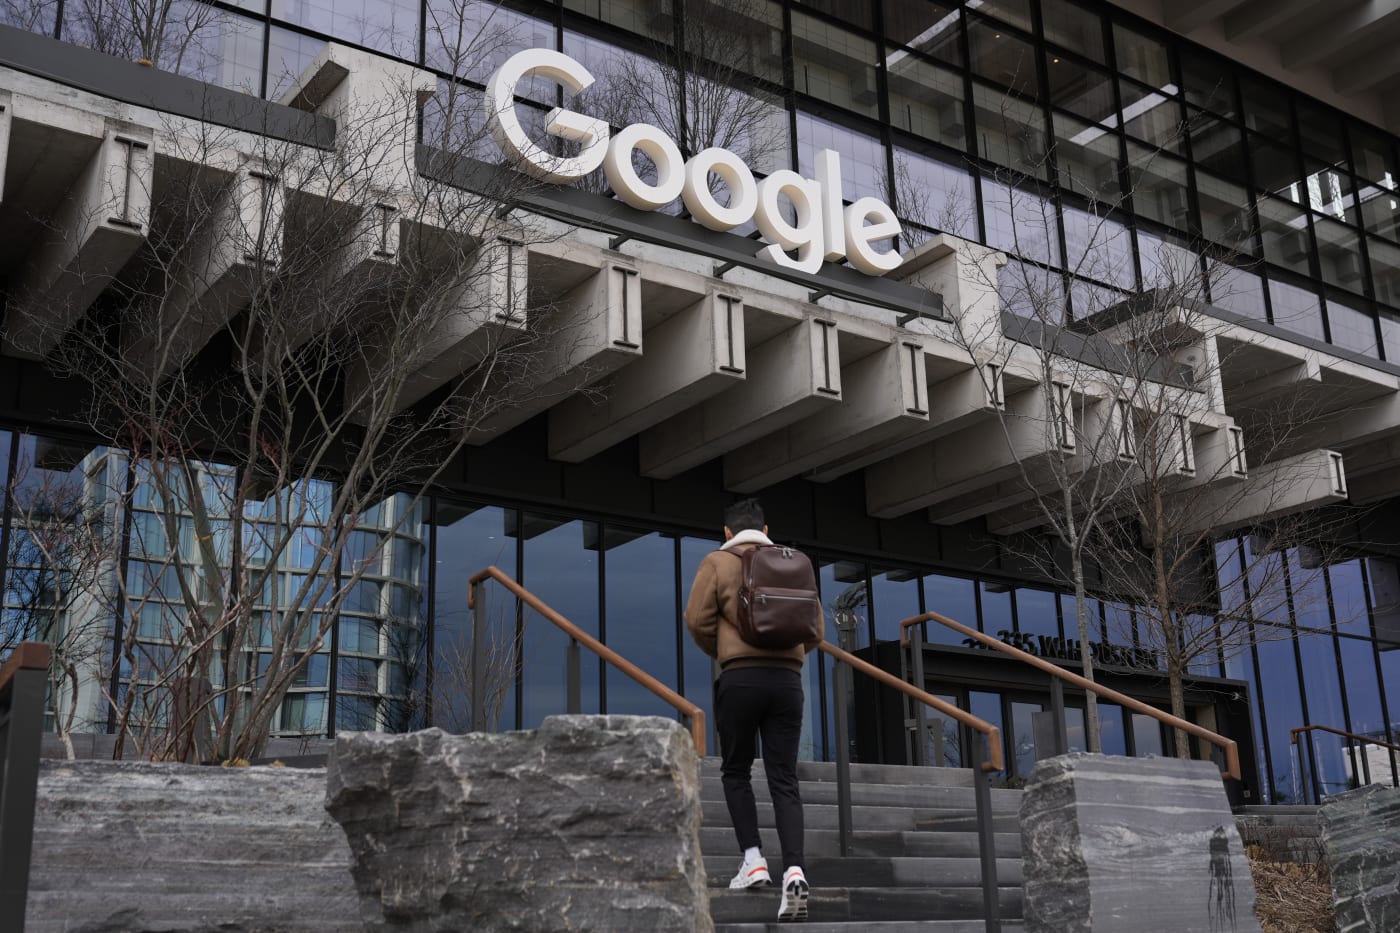 Google entlässt Ingenieur, der auf einer vom Unternehmen gesponserten israelischen Technologiekonferenz protestierte